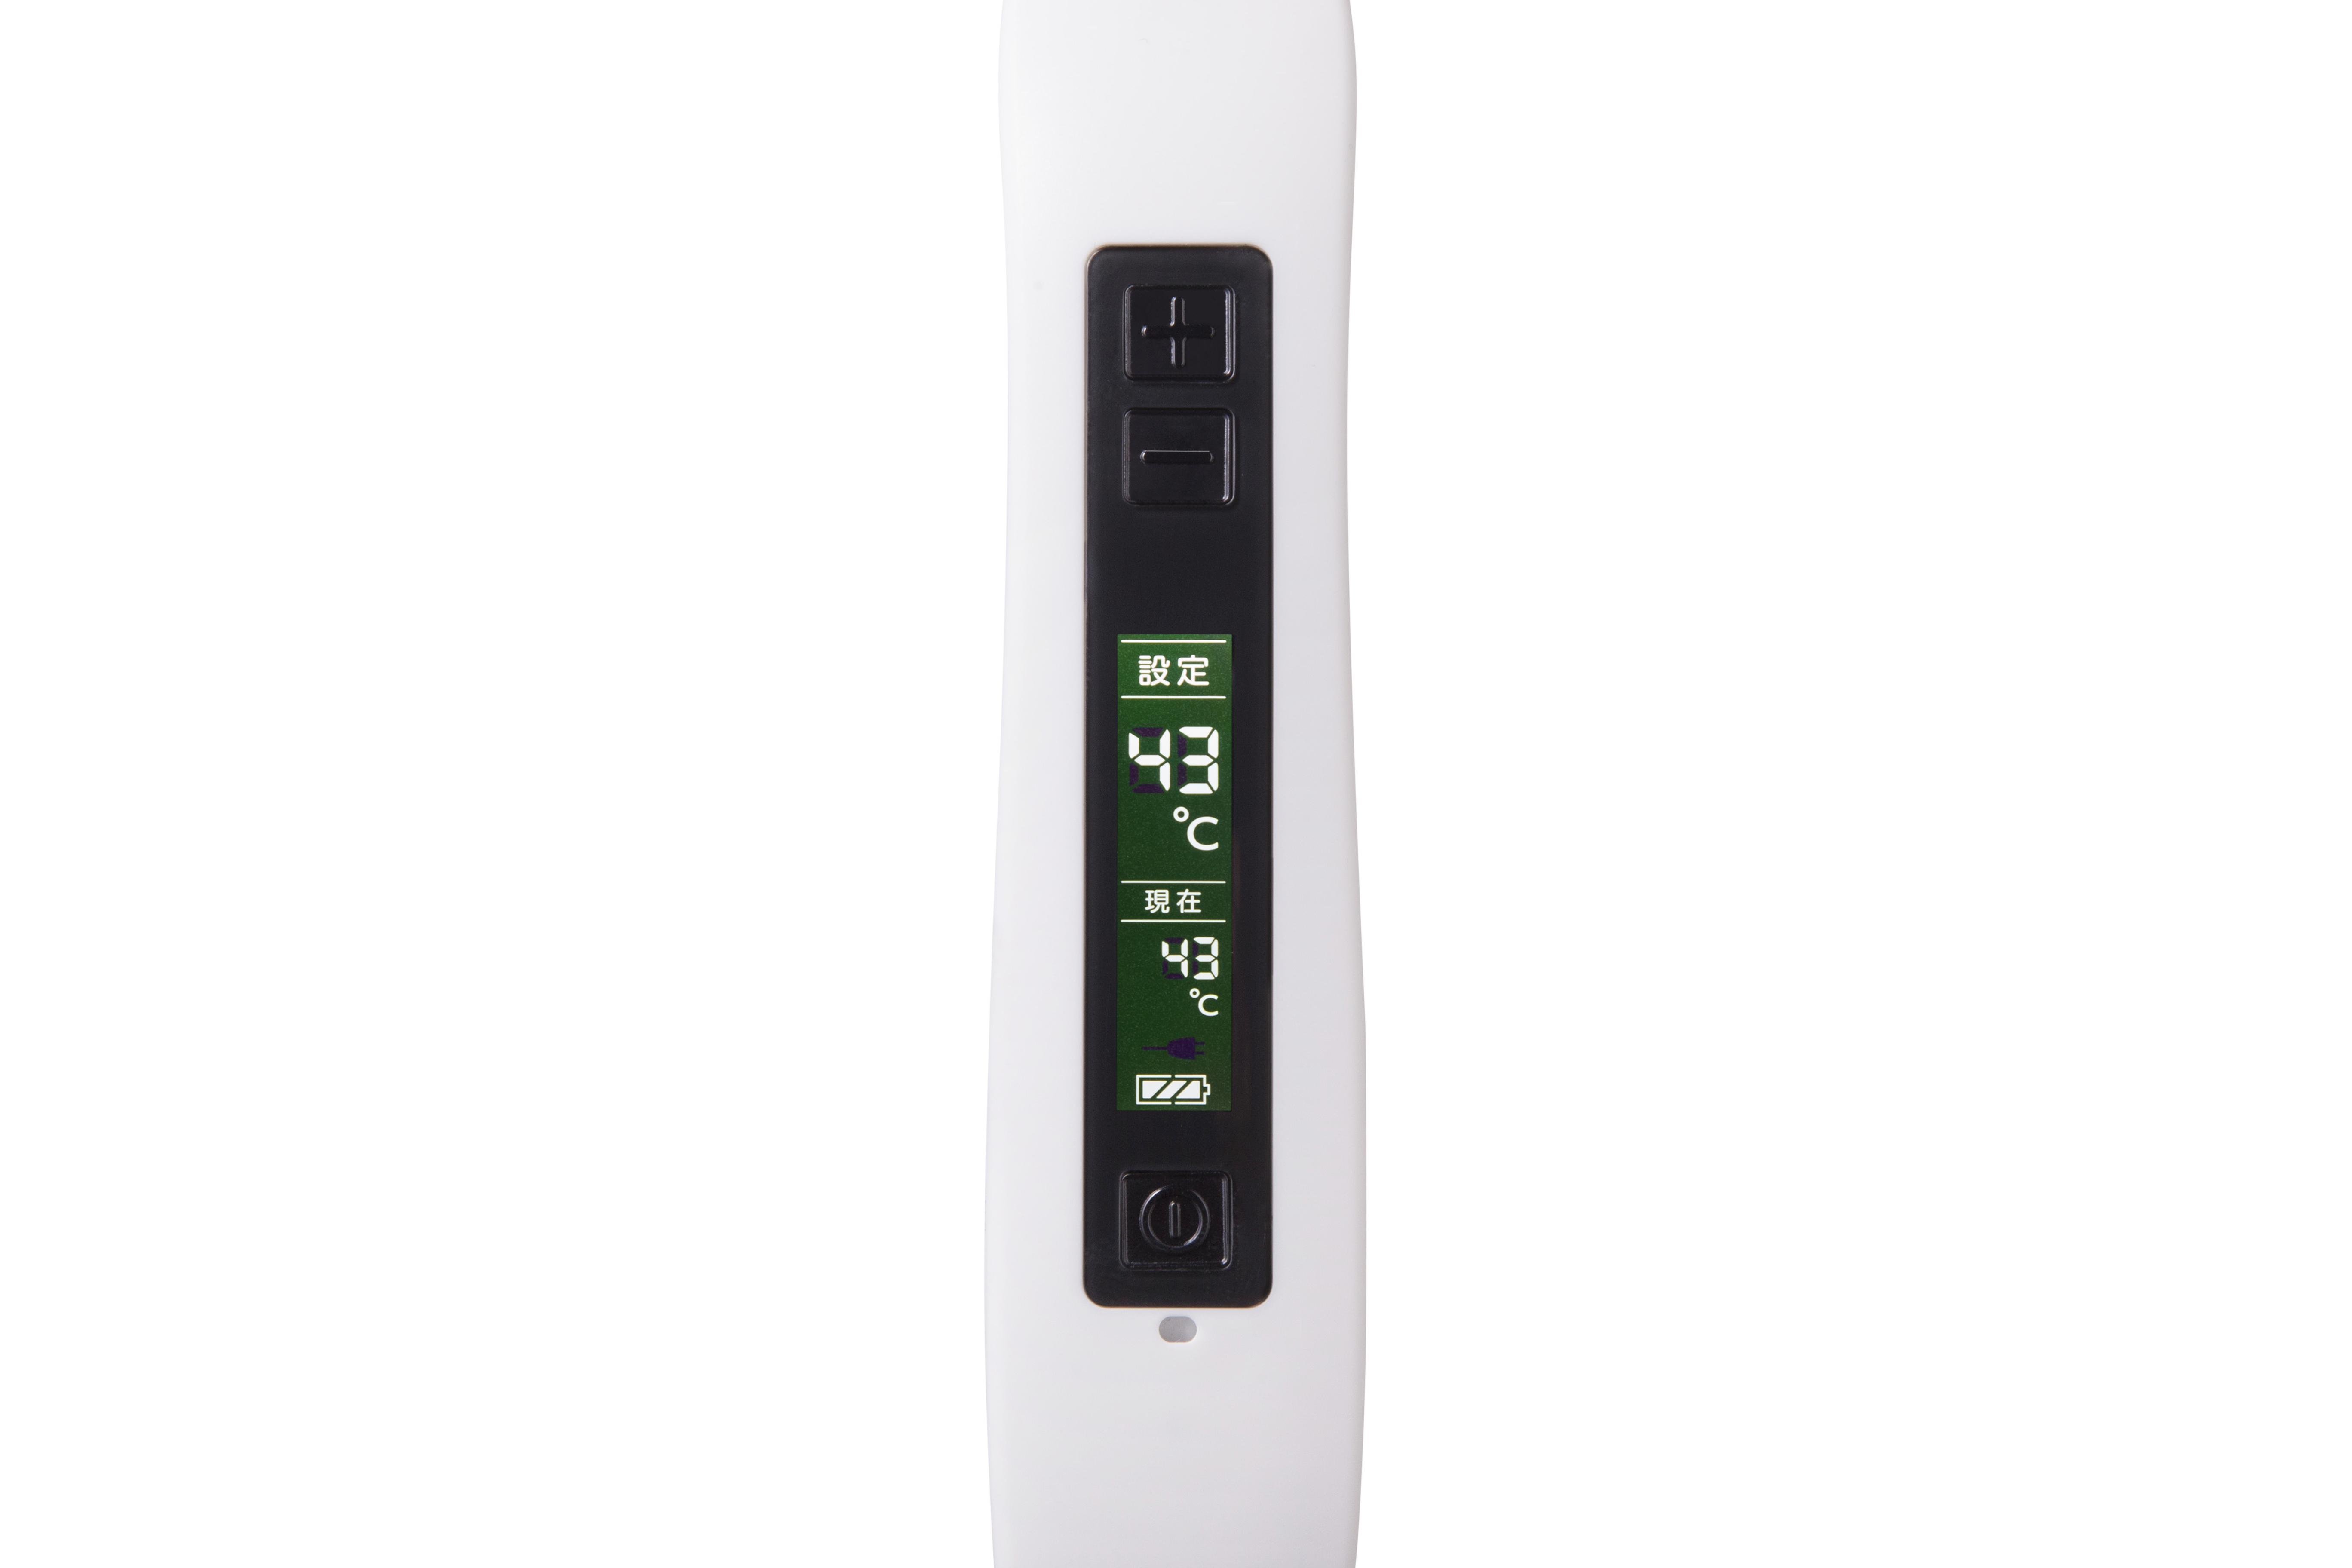 セラミック電気温灸器 CQ5000の液晶画面。設定温度と現在の温度、電池の残量が確認できる。